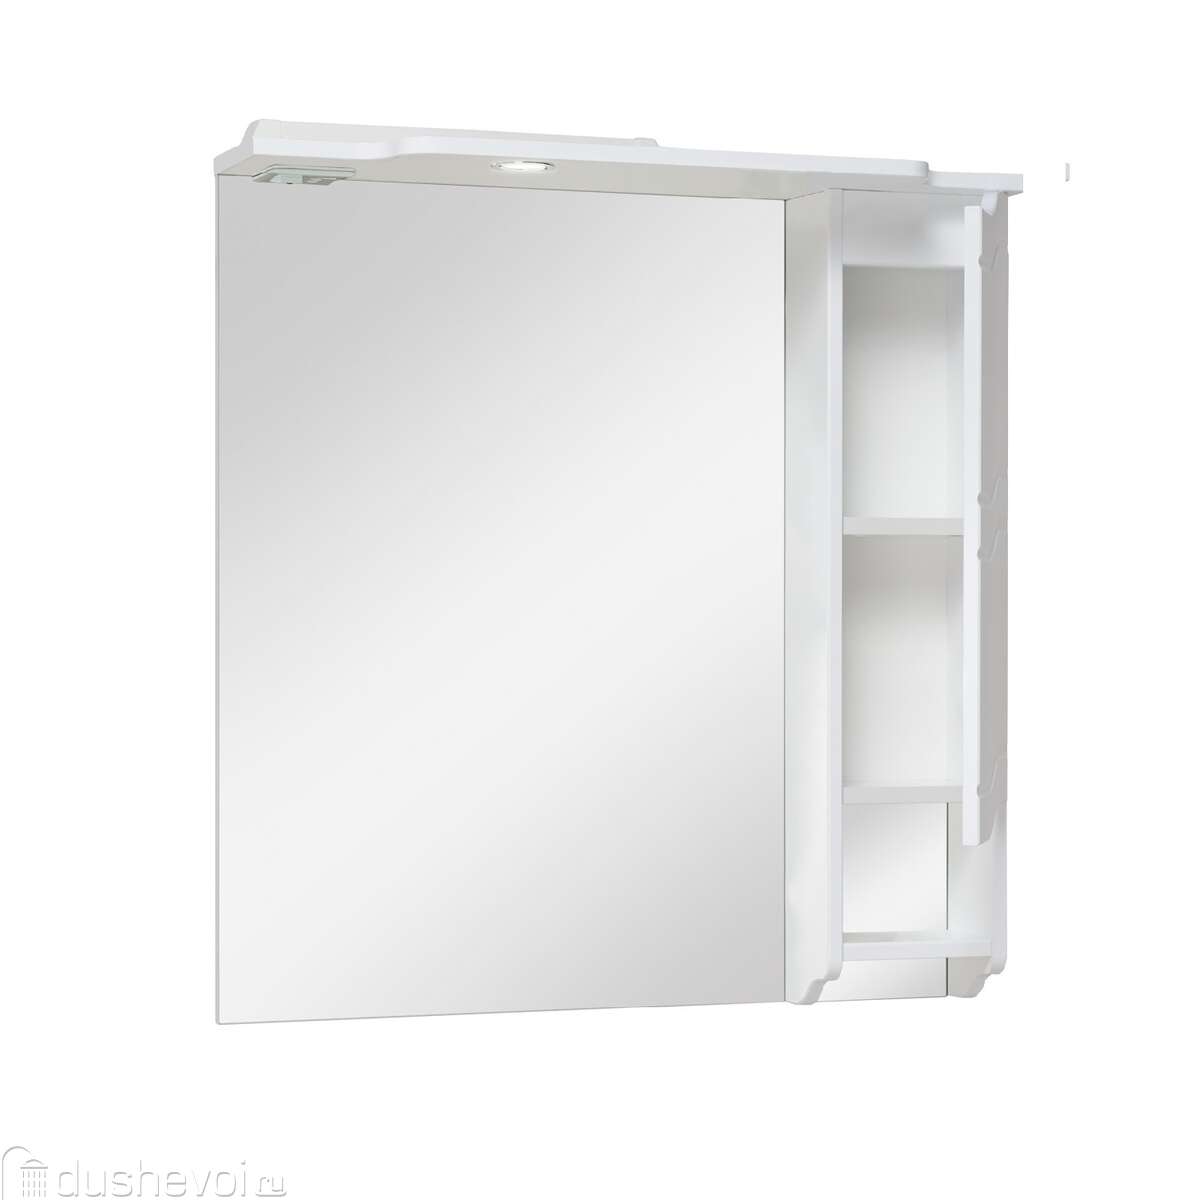 Зеркальный шкаф асб мебель мессина